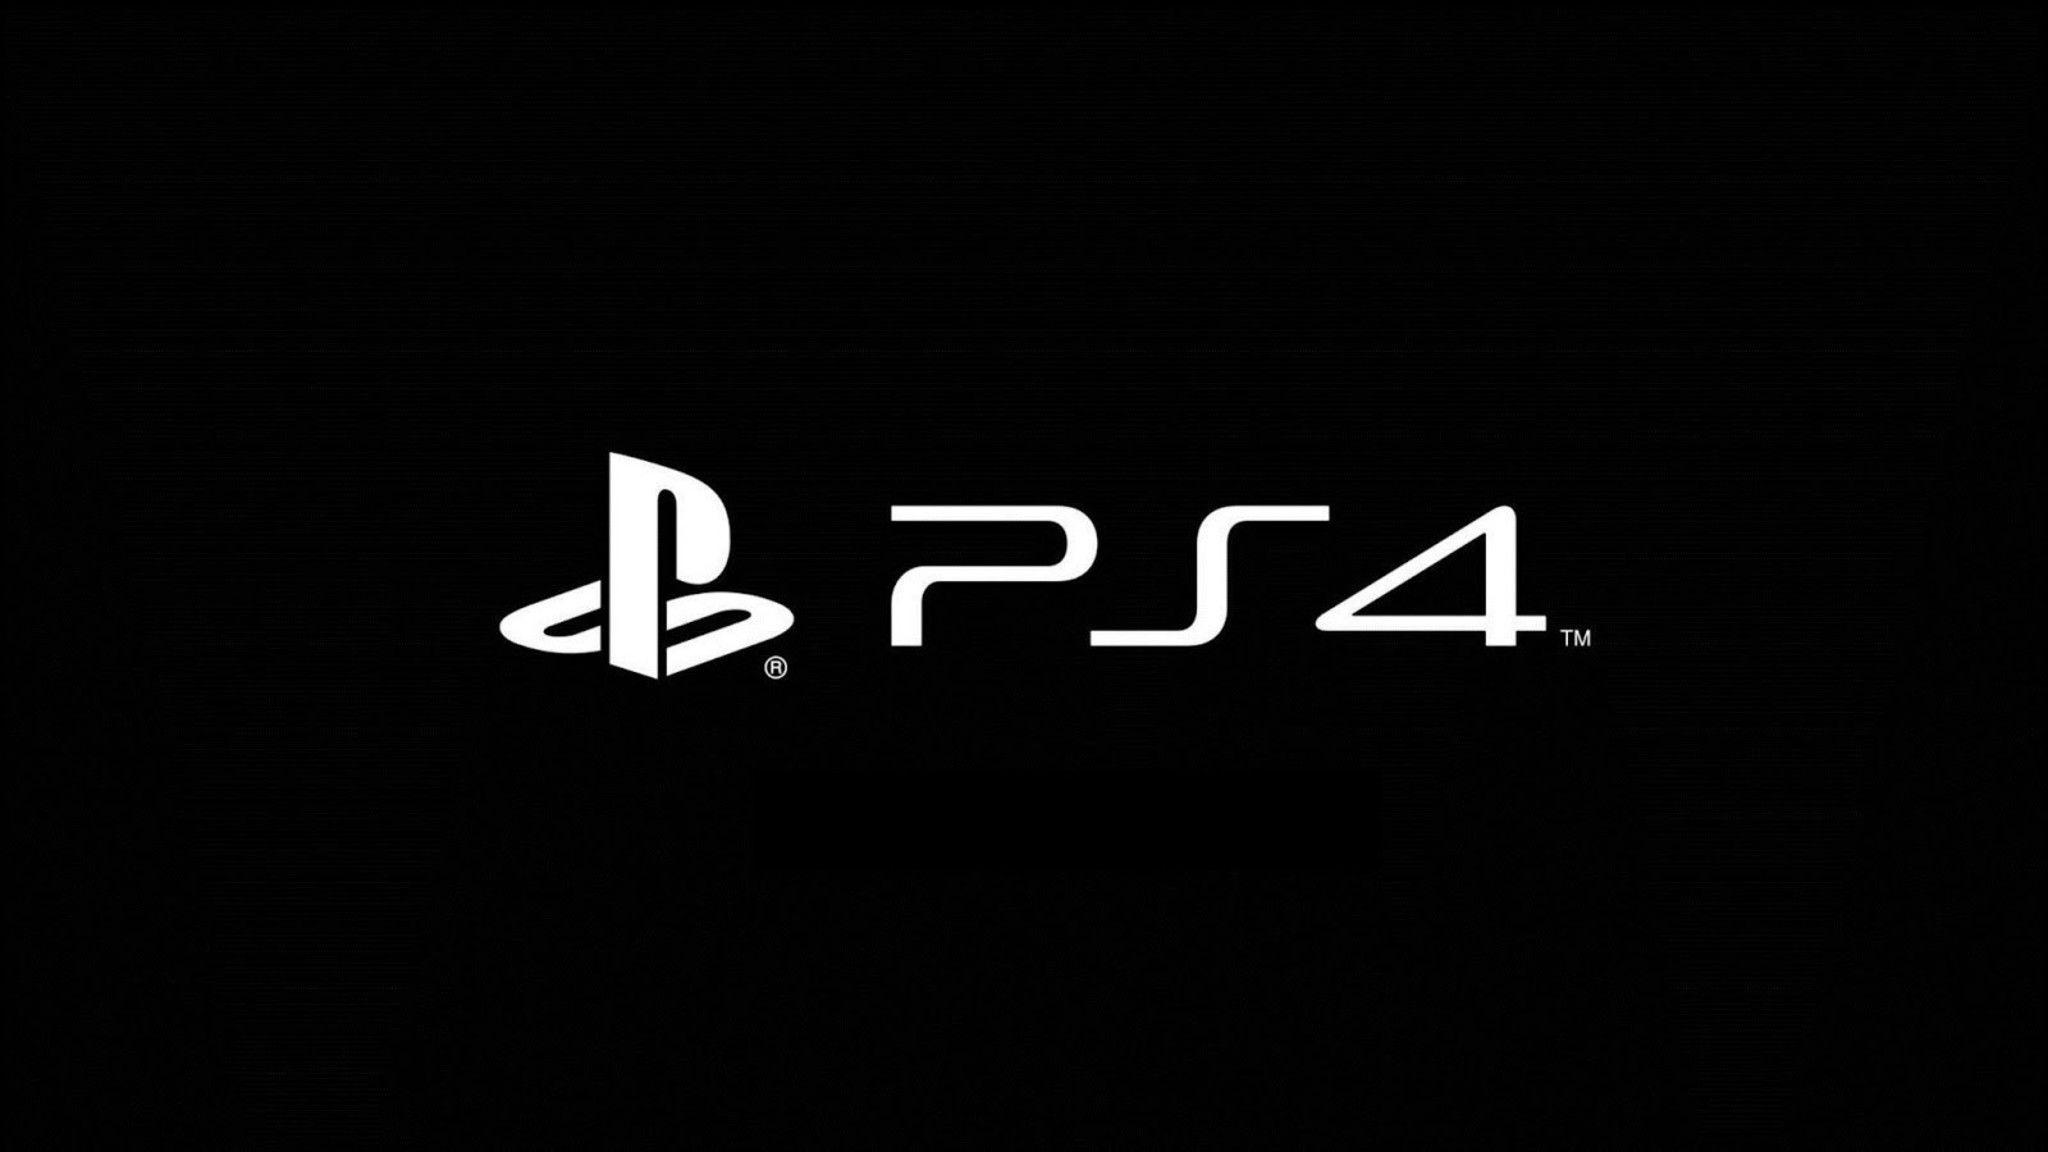 2048x1152 Hình nền PlayStation 4 2048. Hình nền PlayStation, Hình nền PlayStation Xbox và Hình nền PlayStation 3 Slim